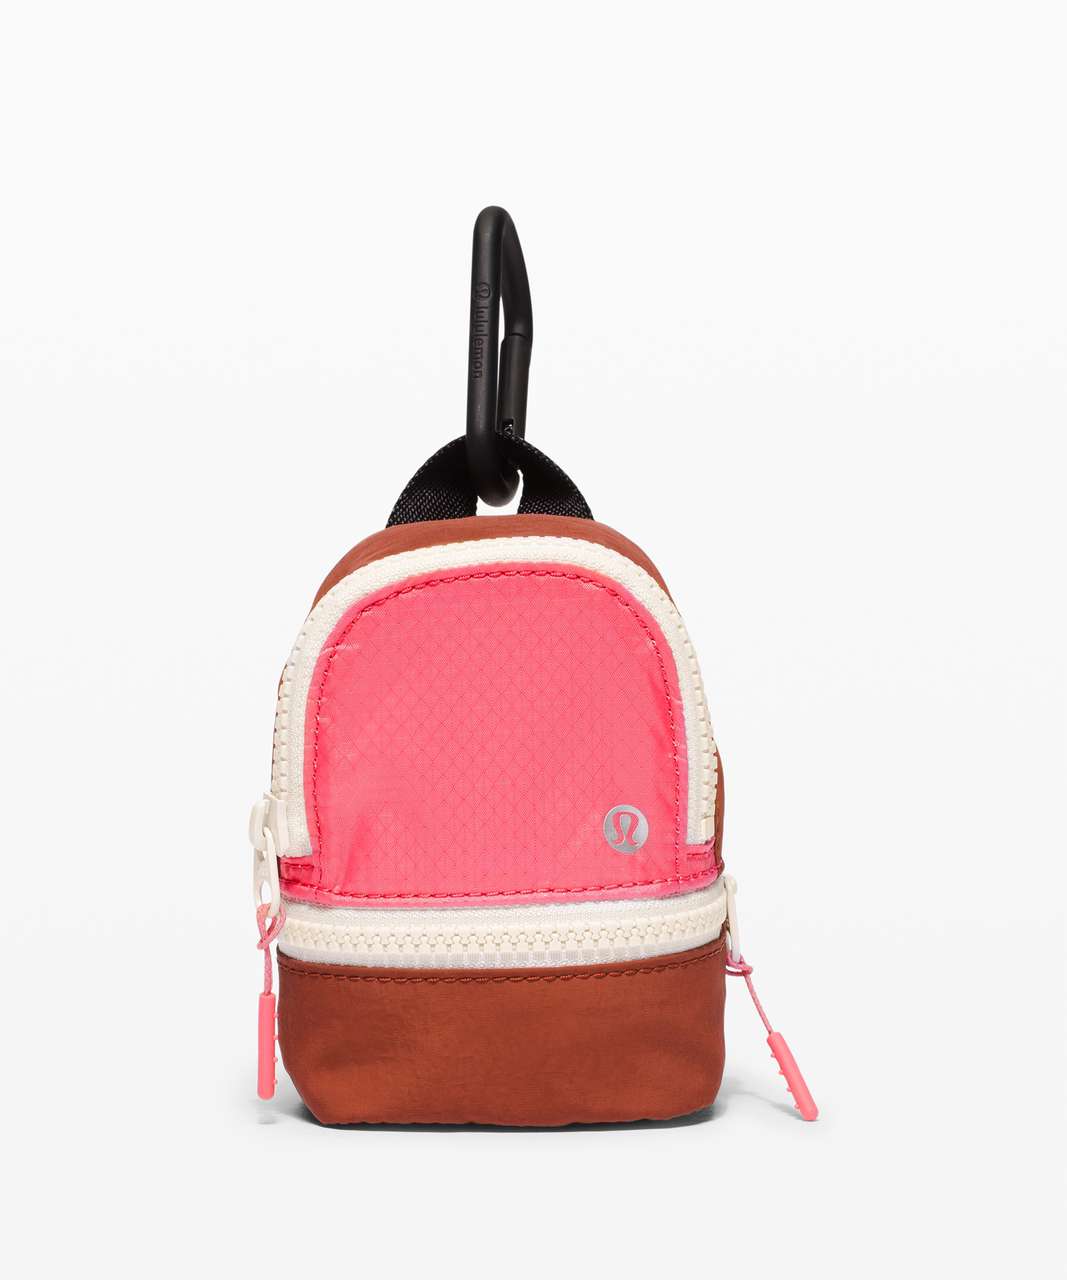 Lululemon City Adventurer Backpack *Nano - Guava Pink / Dark Terracotta / White Opal